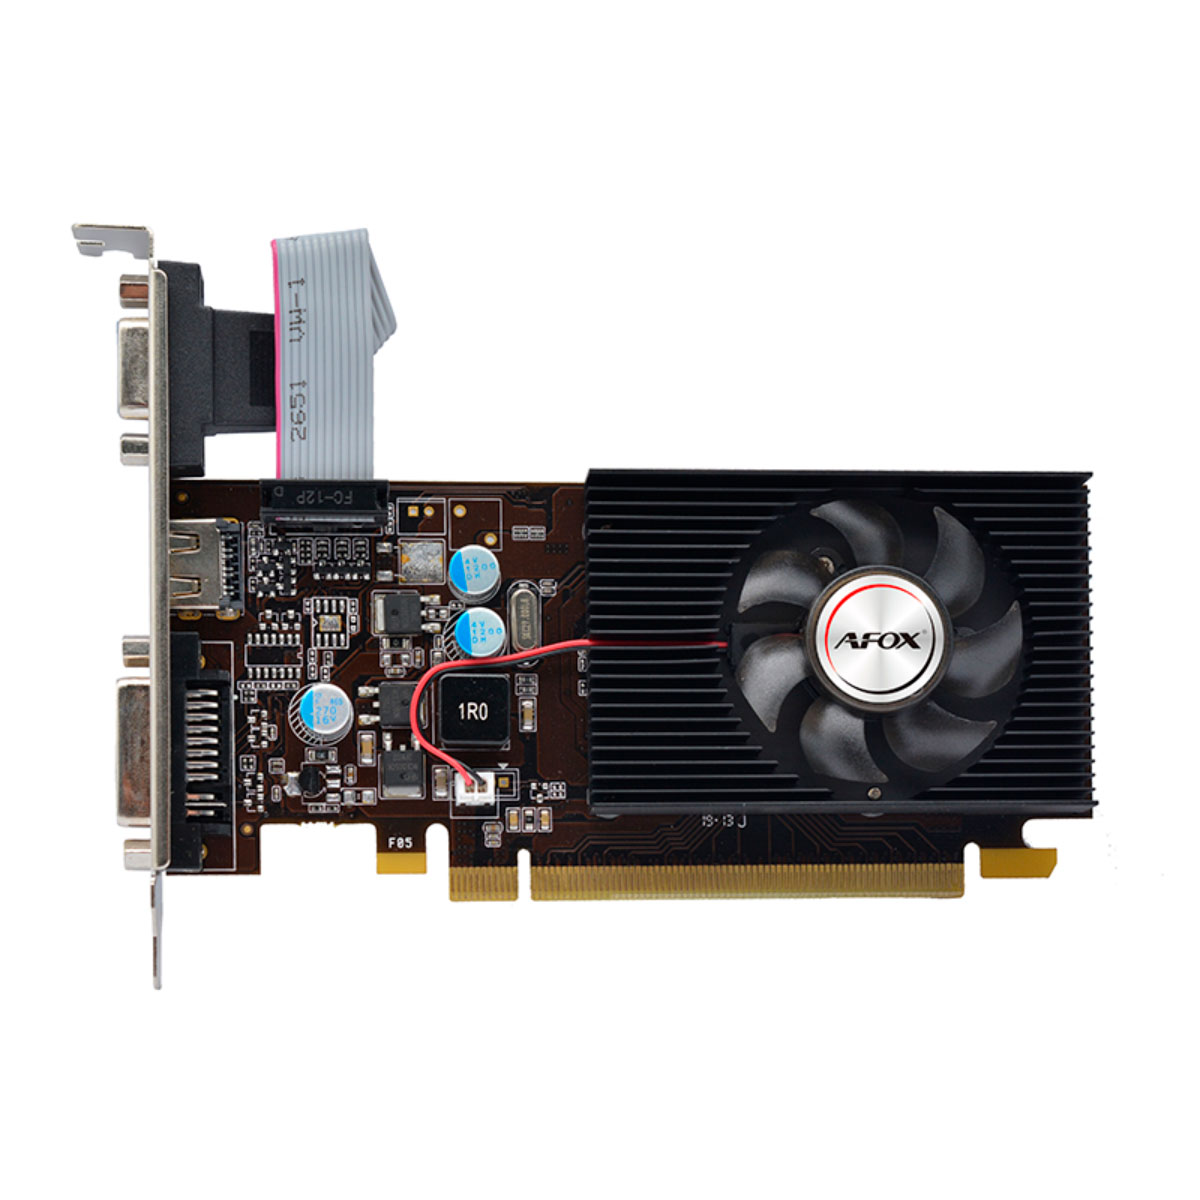 GeForce GT 210 1GB GDDR3 64bits - Low Profile - AFOX AF210-1024D3L5-V2 - Open Box